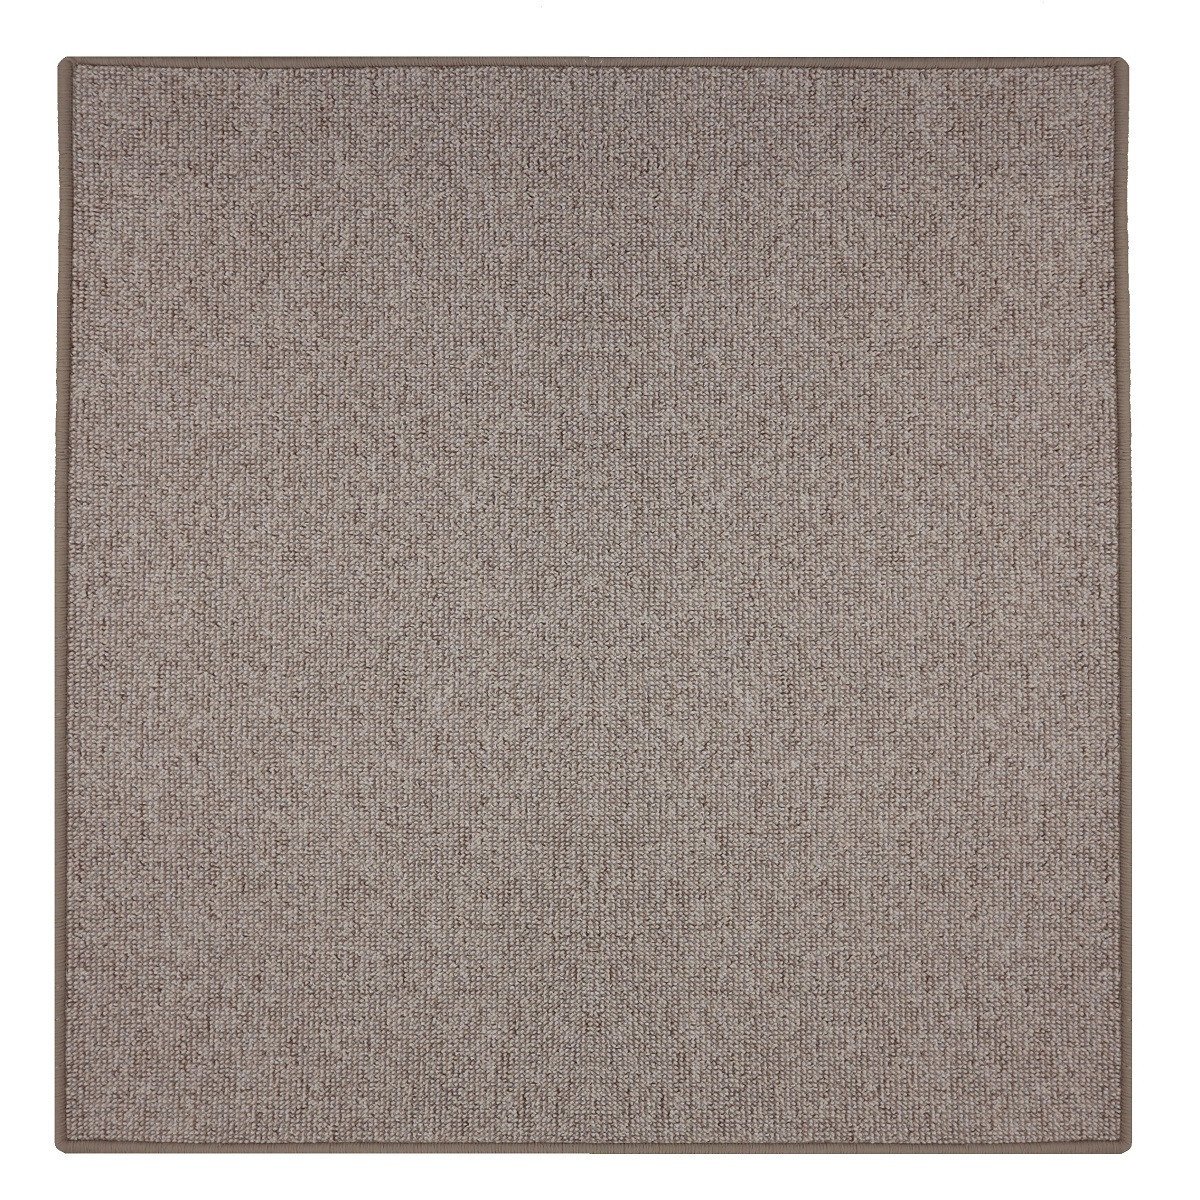 Mujkoberec.cz Kusový koberec Neapol 4713 čtverec - 60x60 cm Béžová